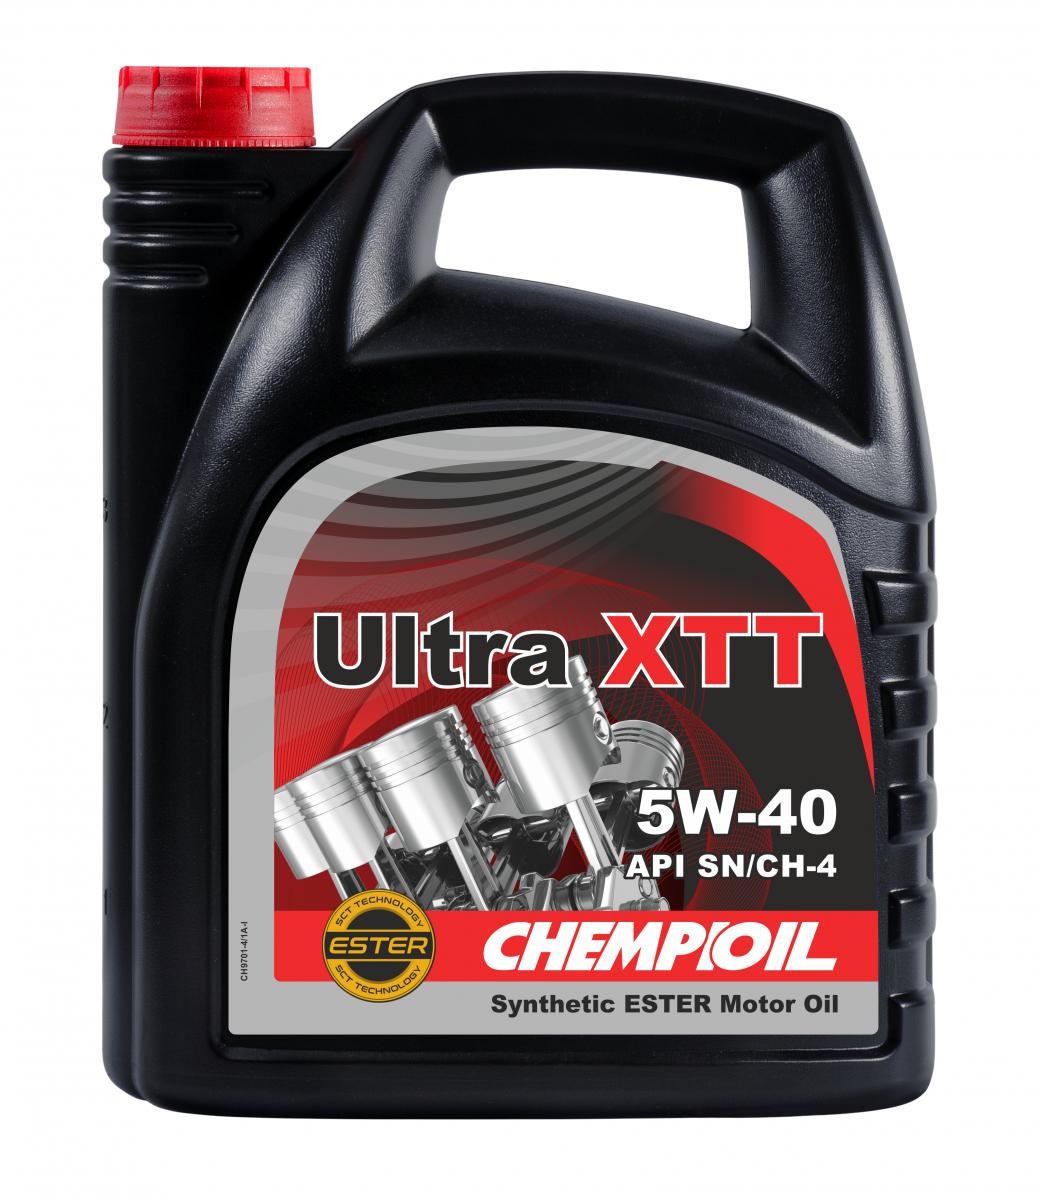 Buy Motor oil CHEMPIOIL petrol CH9701-4 Ultra, XTT 5W-40, 4l